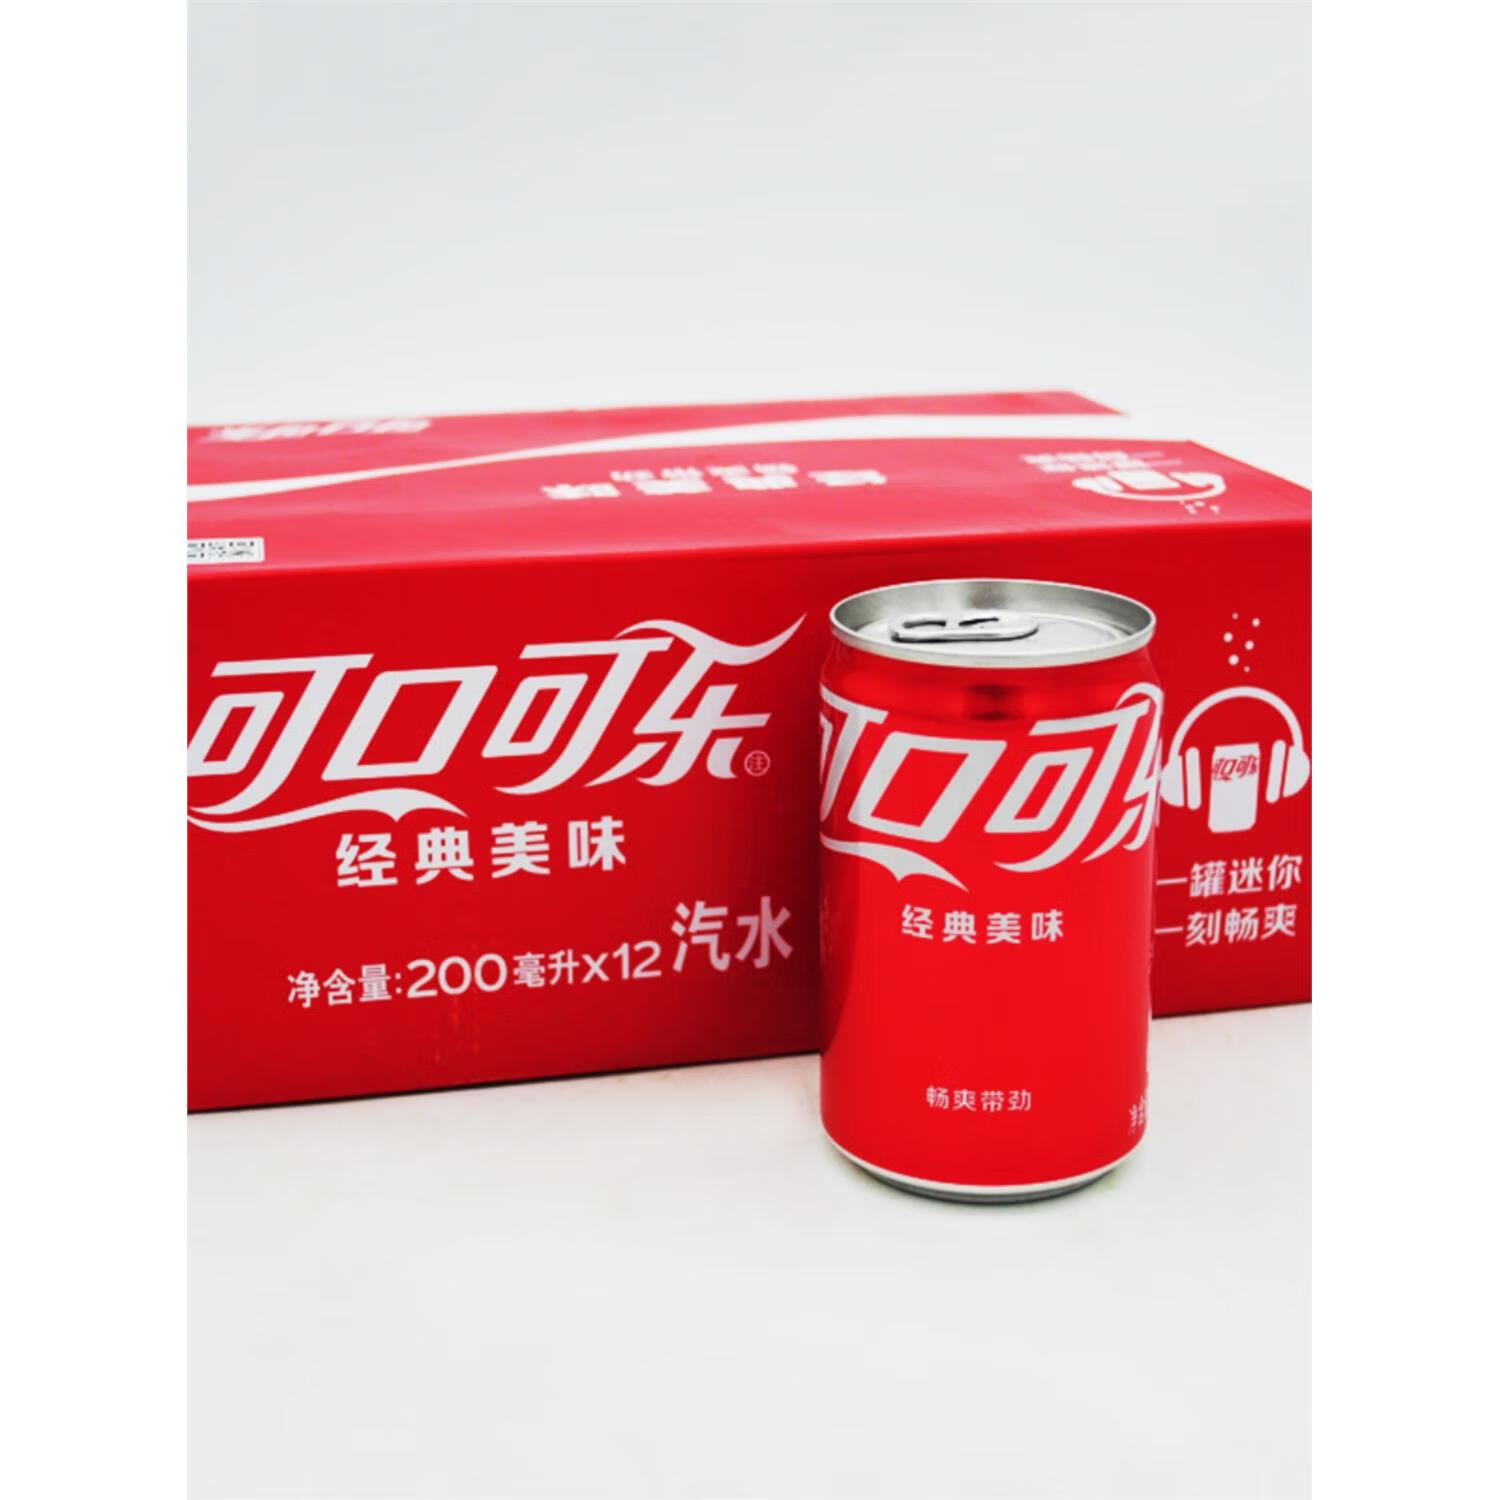 plus：COCA COLA 可口可乐 200ml*24罐 26.5元包邮